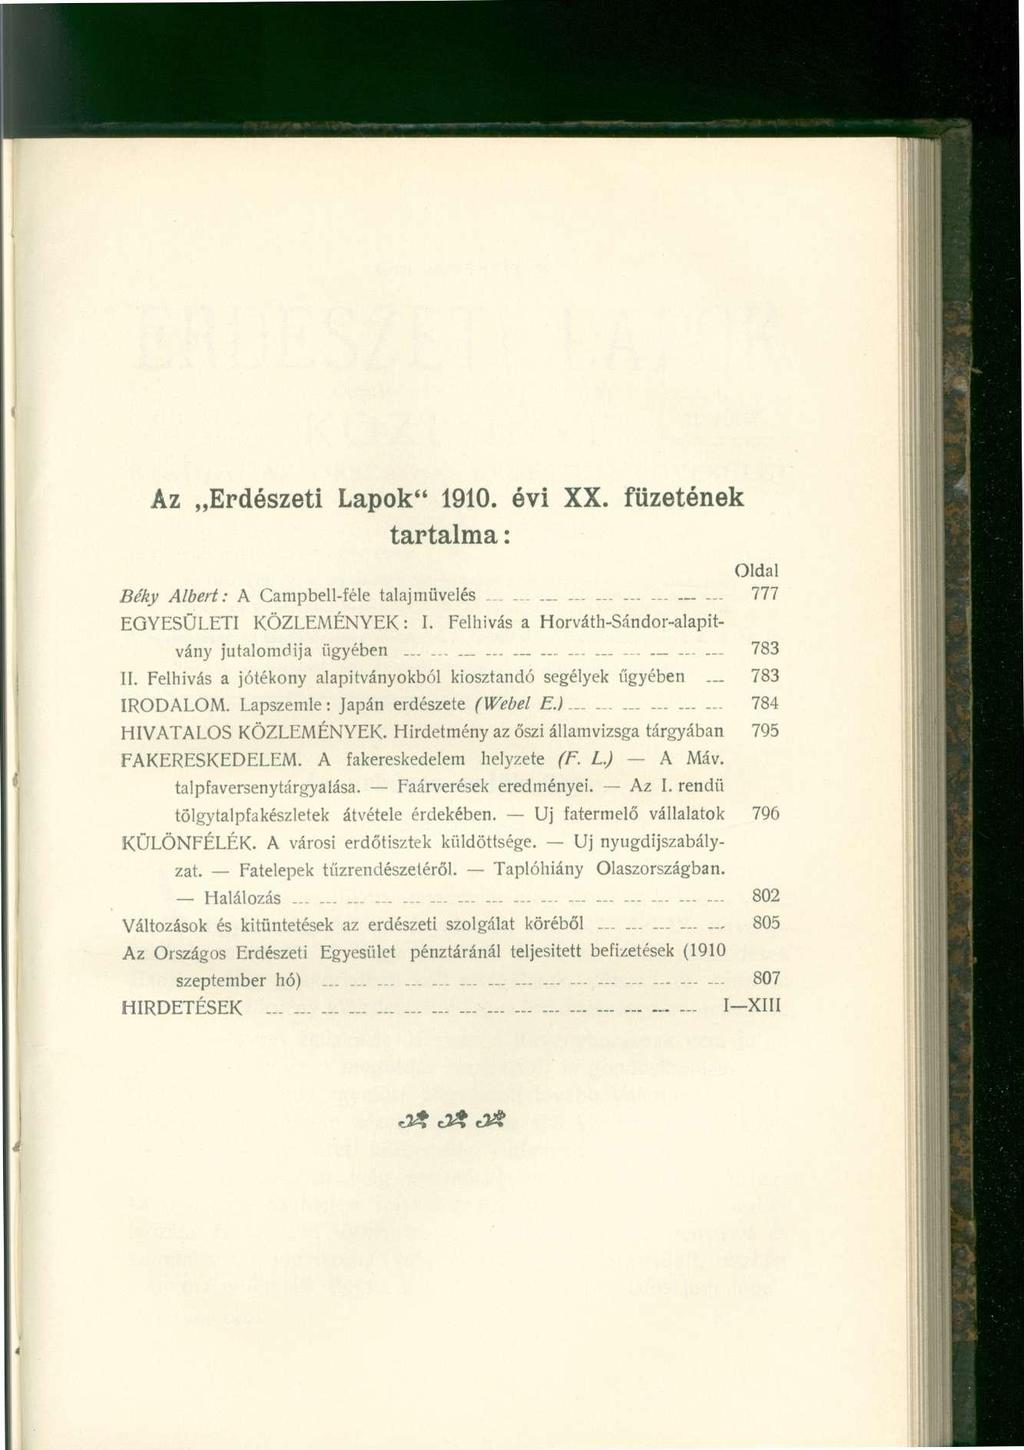 Az Erdészeti Lapok" 1910. évi XX. füzetének tartalma: Oldal Be'ky Albert: A Campbell-féle talajmüvelés............ 777 EGYESÜLETI KÖZLEMÉNYEK: I.